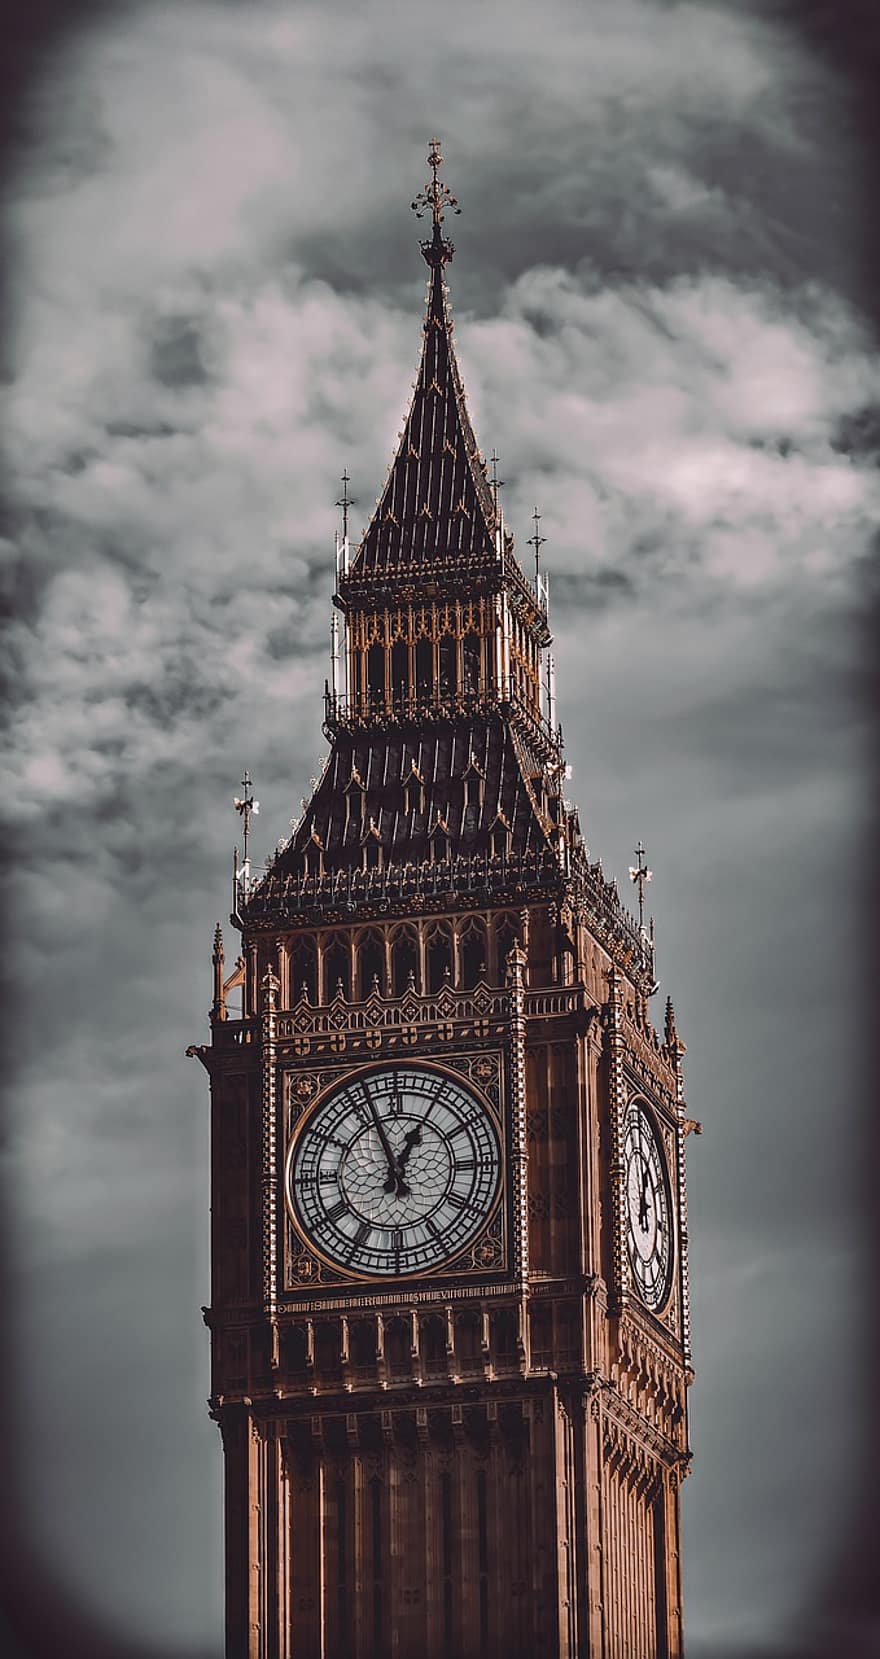 Big Ben, Clock, Tower, City, Urban, Building, Architecture, London, Tourist, Travel, Famous